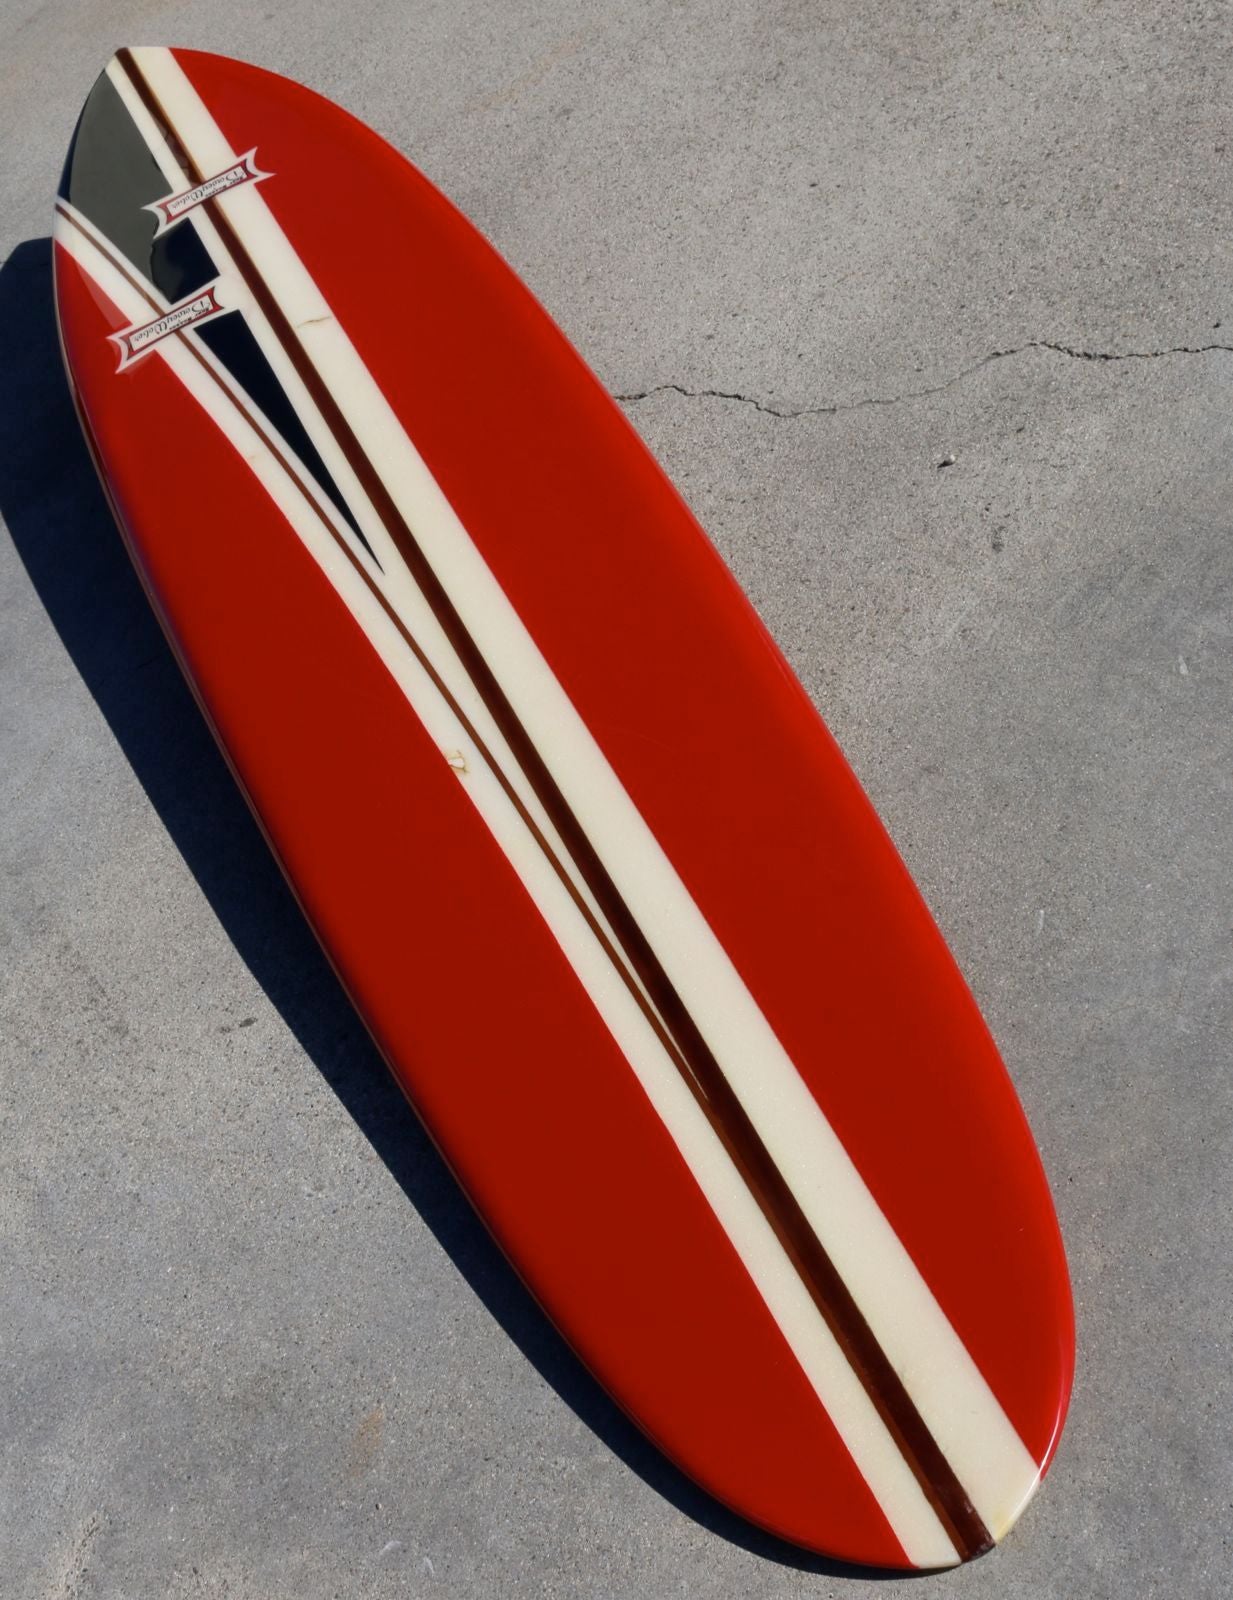 1950s surfboard